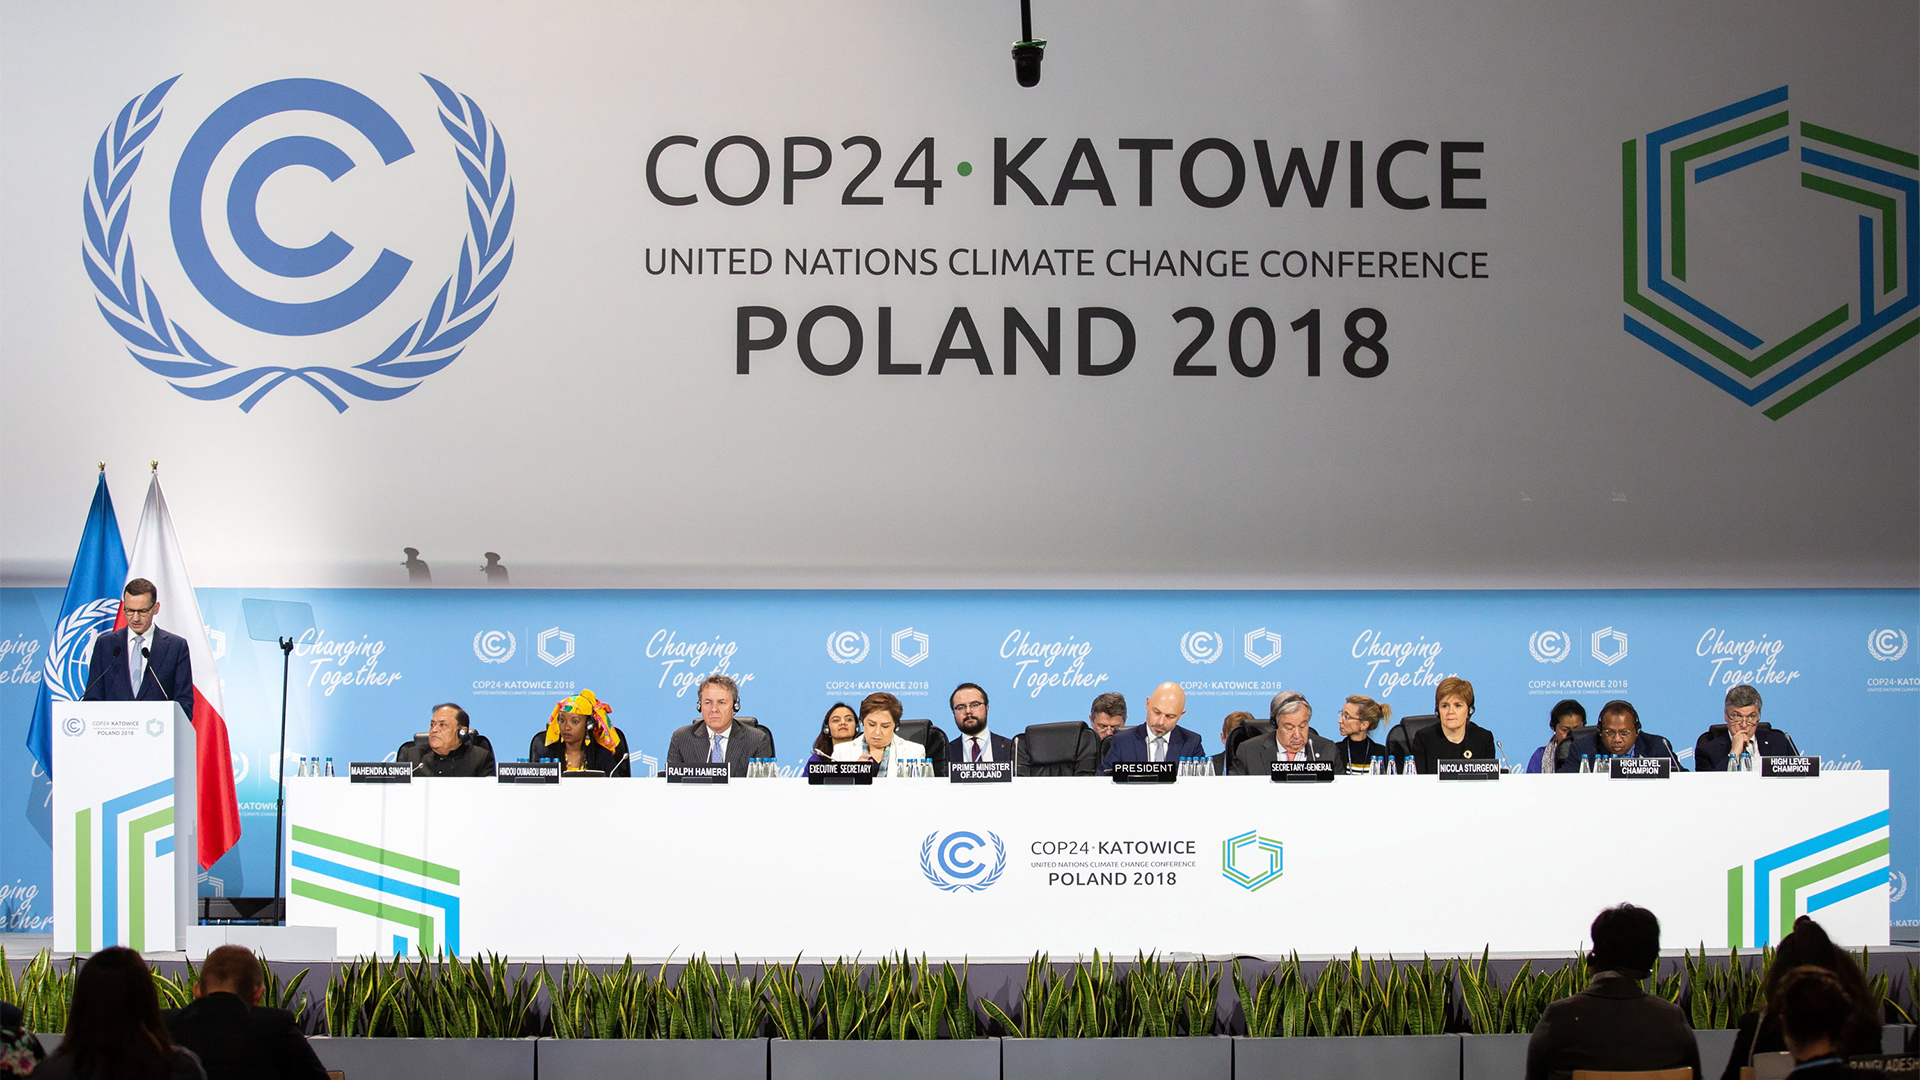 Mateusz Morawiecki (l), Premierminister von Polen, hält während des Weltklimagipfels eine Rede | Bildquelle: dpa